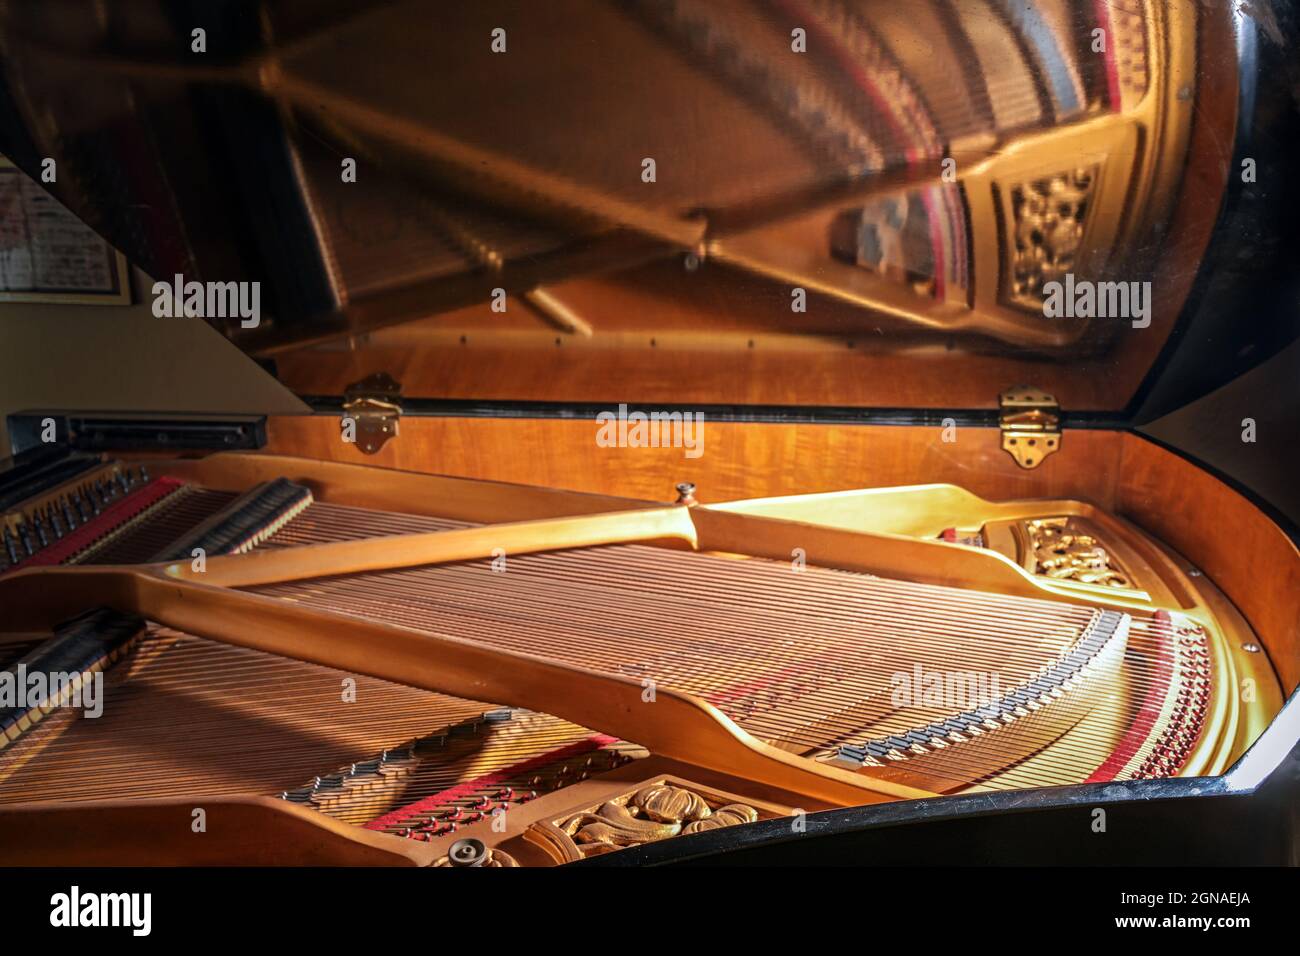 Dentro de un piano de cola con espejo de marcos y cuerdas en la tapa abierta del instrumento musical, concepto de música, arte y entretenimiento, selécte Foto de stock